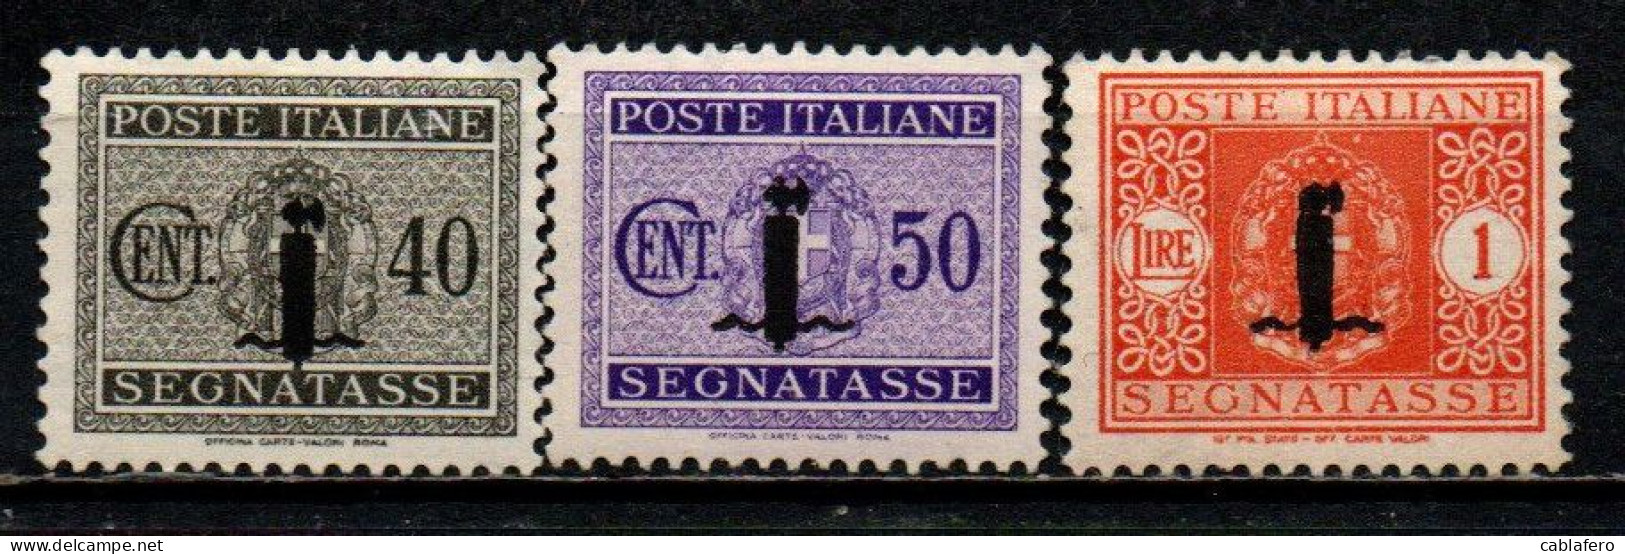 ITALIA RSI - 1944 - SEGNATASSE - VALORI DA 40-50 CENT. E 1 LIRA - MH - Strafport